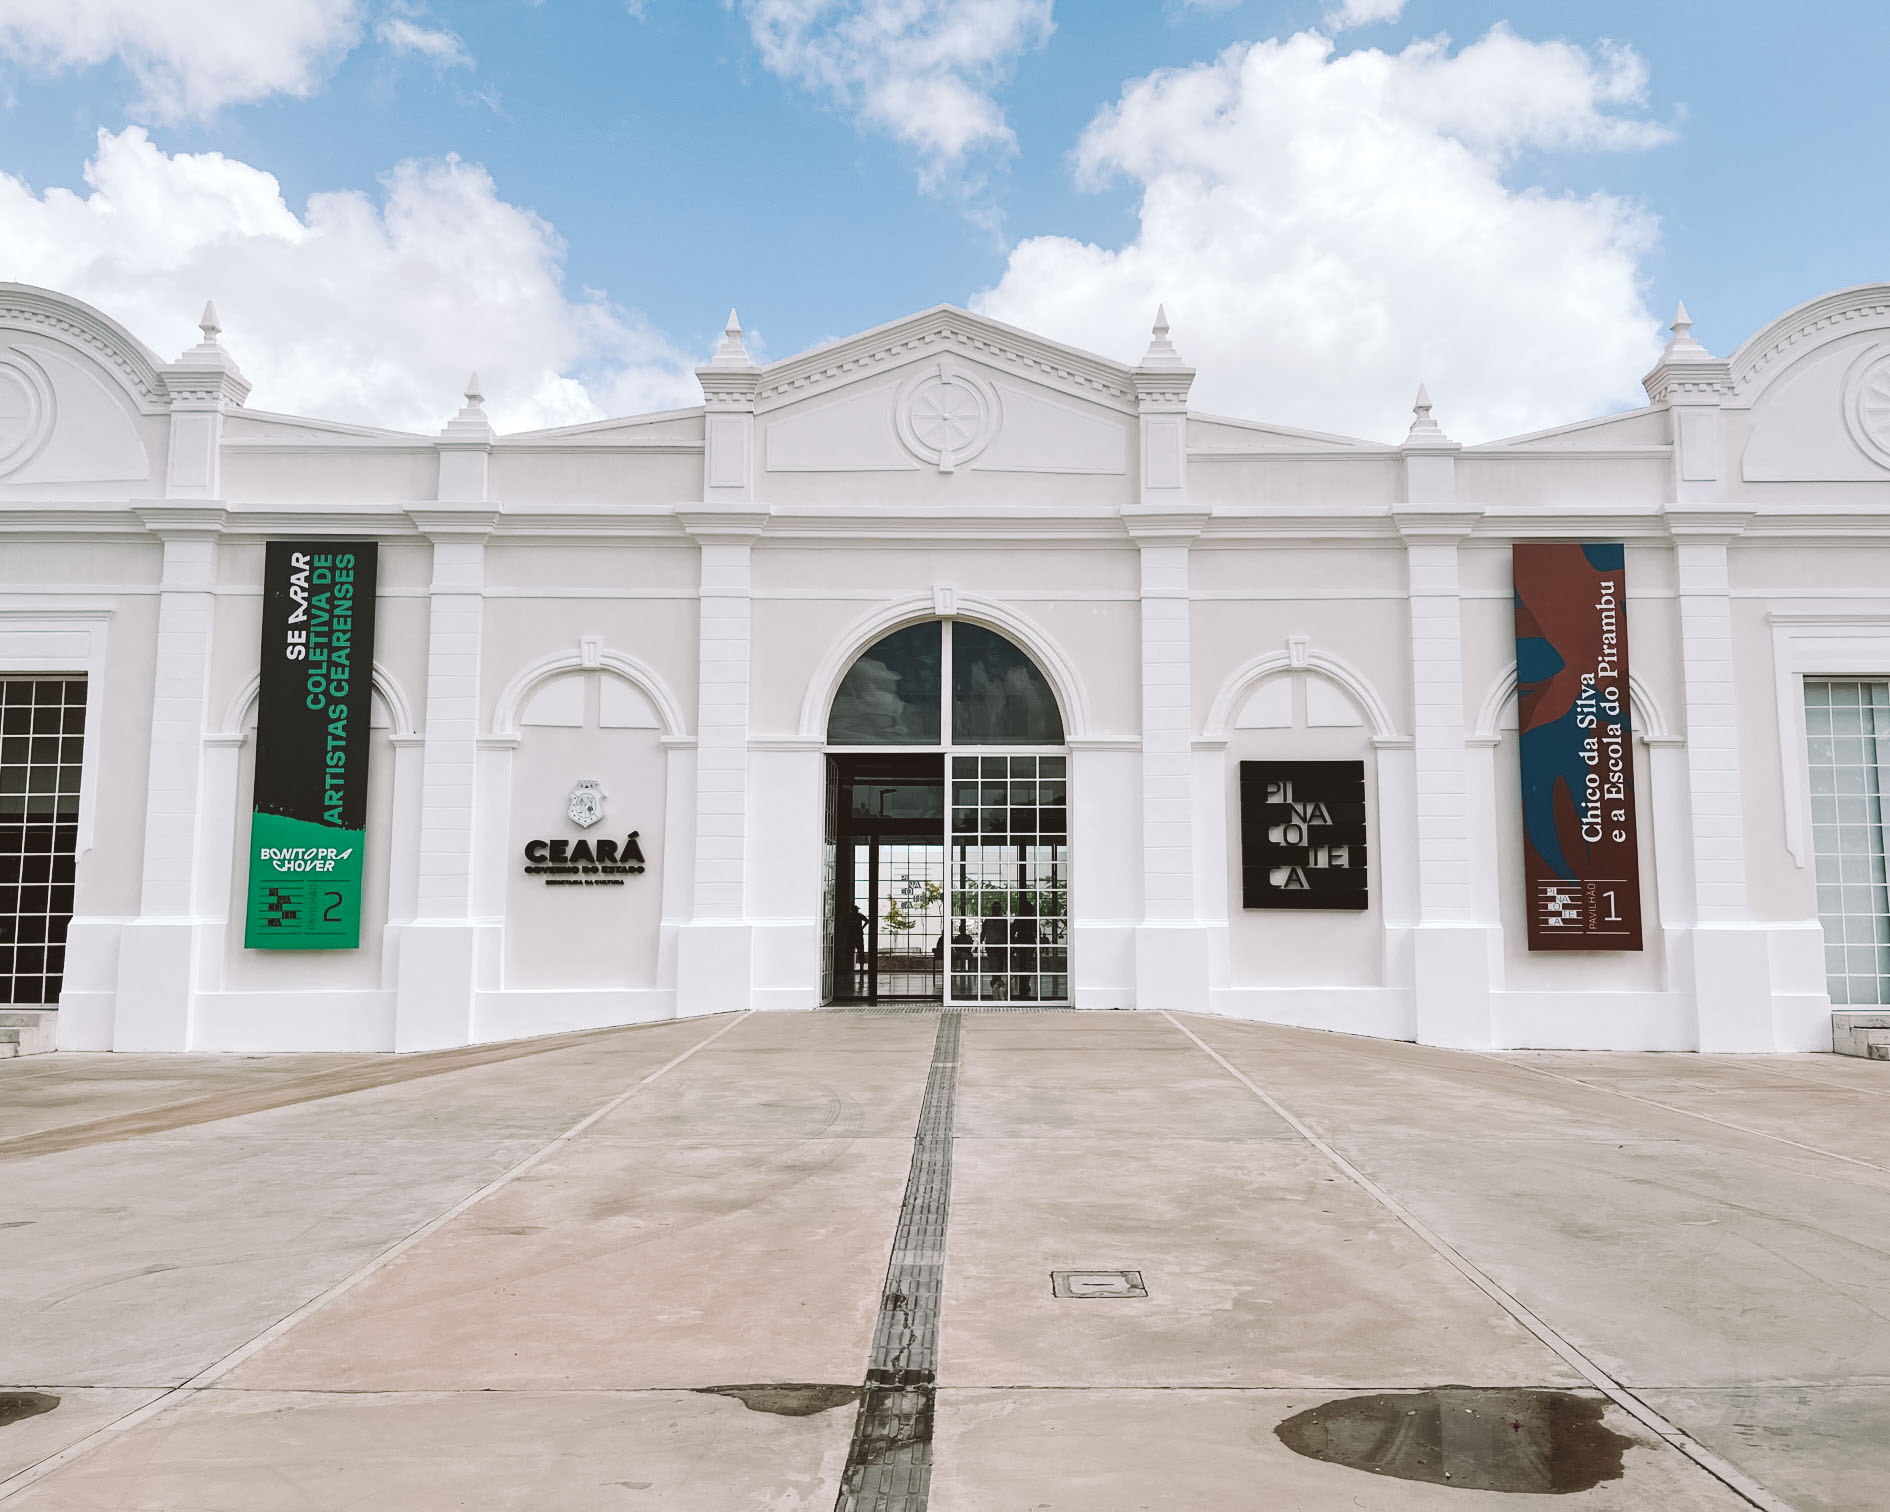 O que fazer em Fortaleza: 28 atrações explicadas